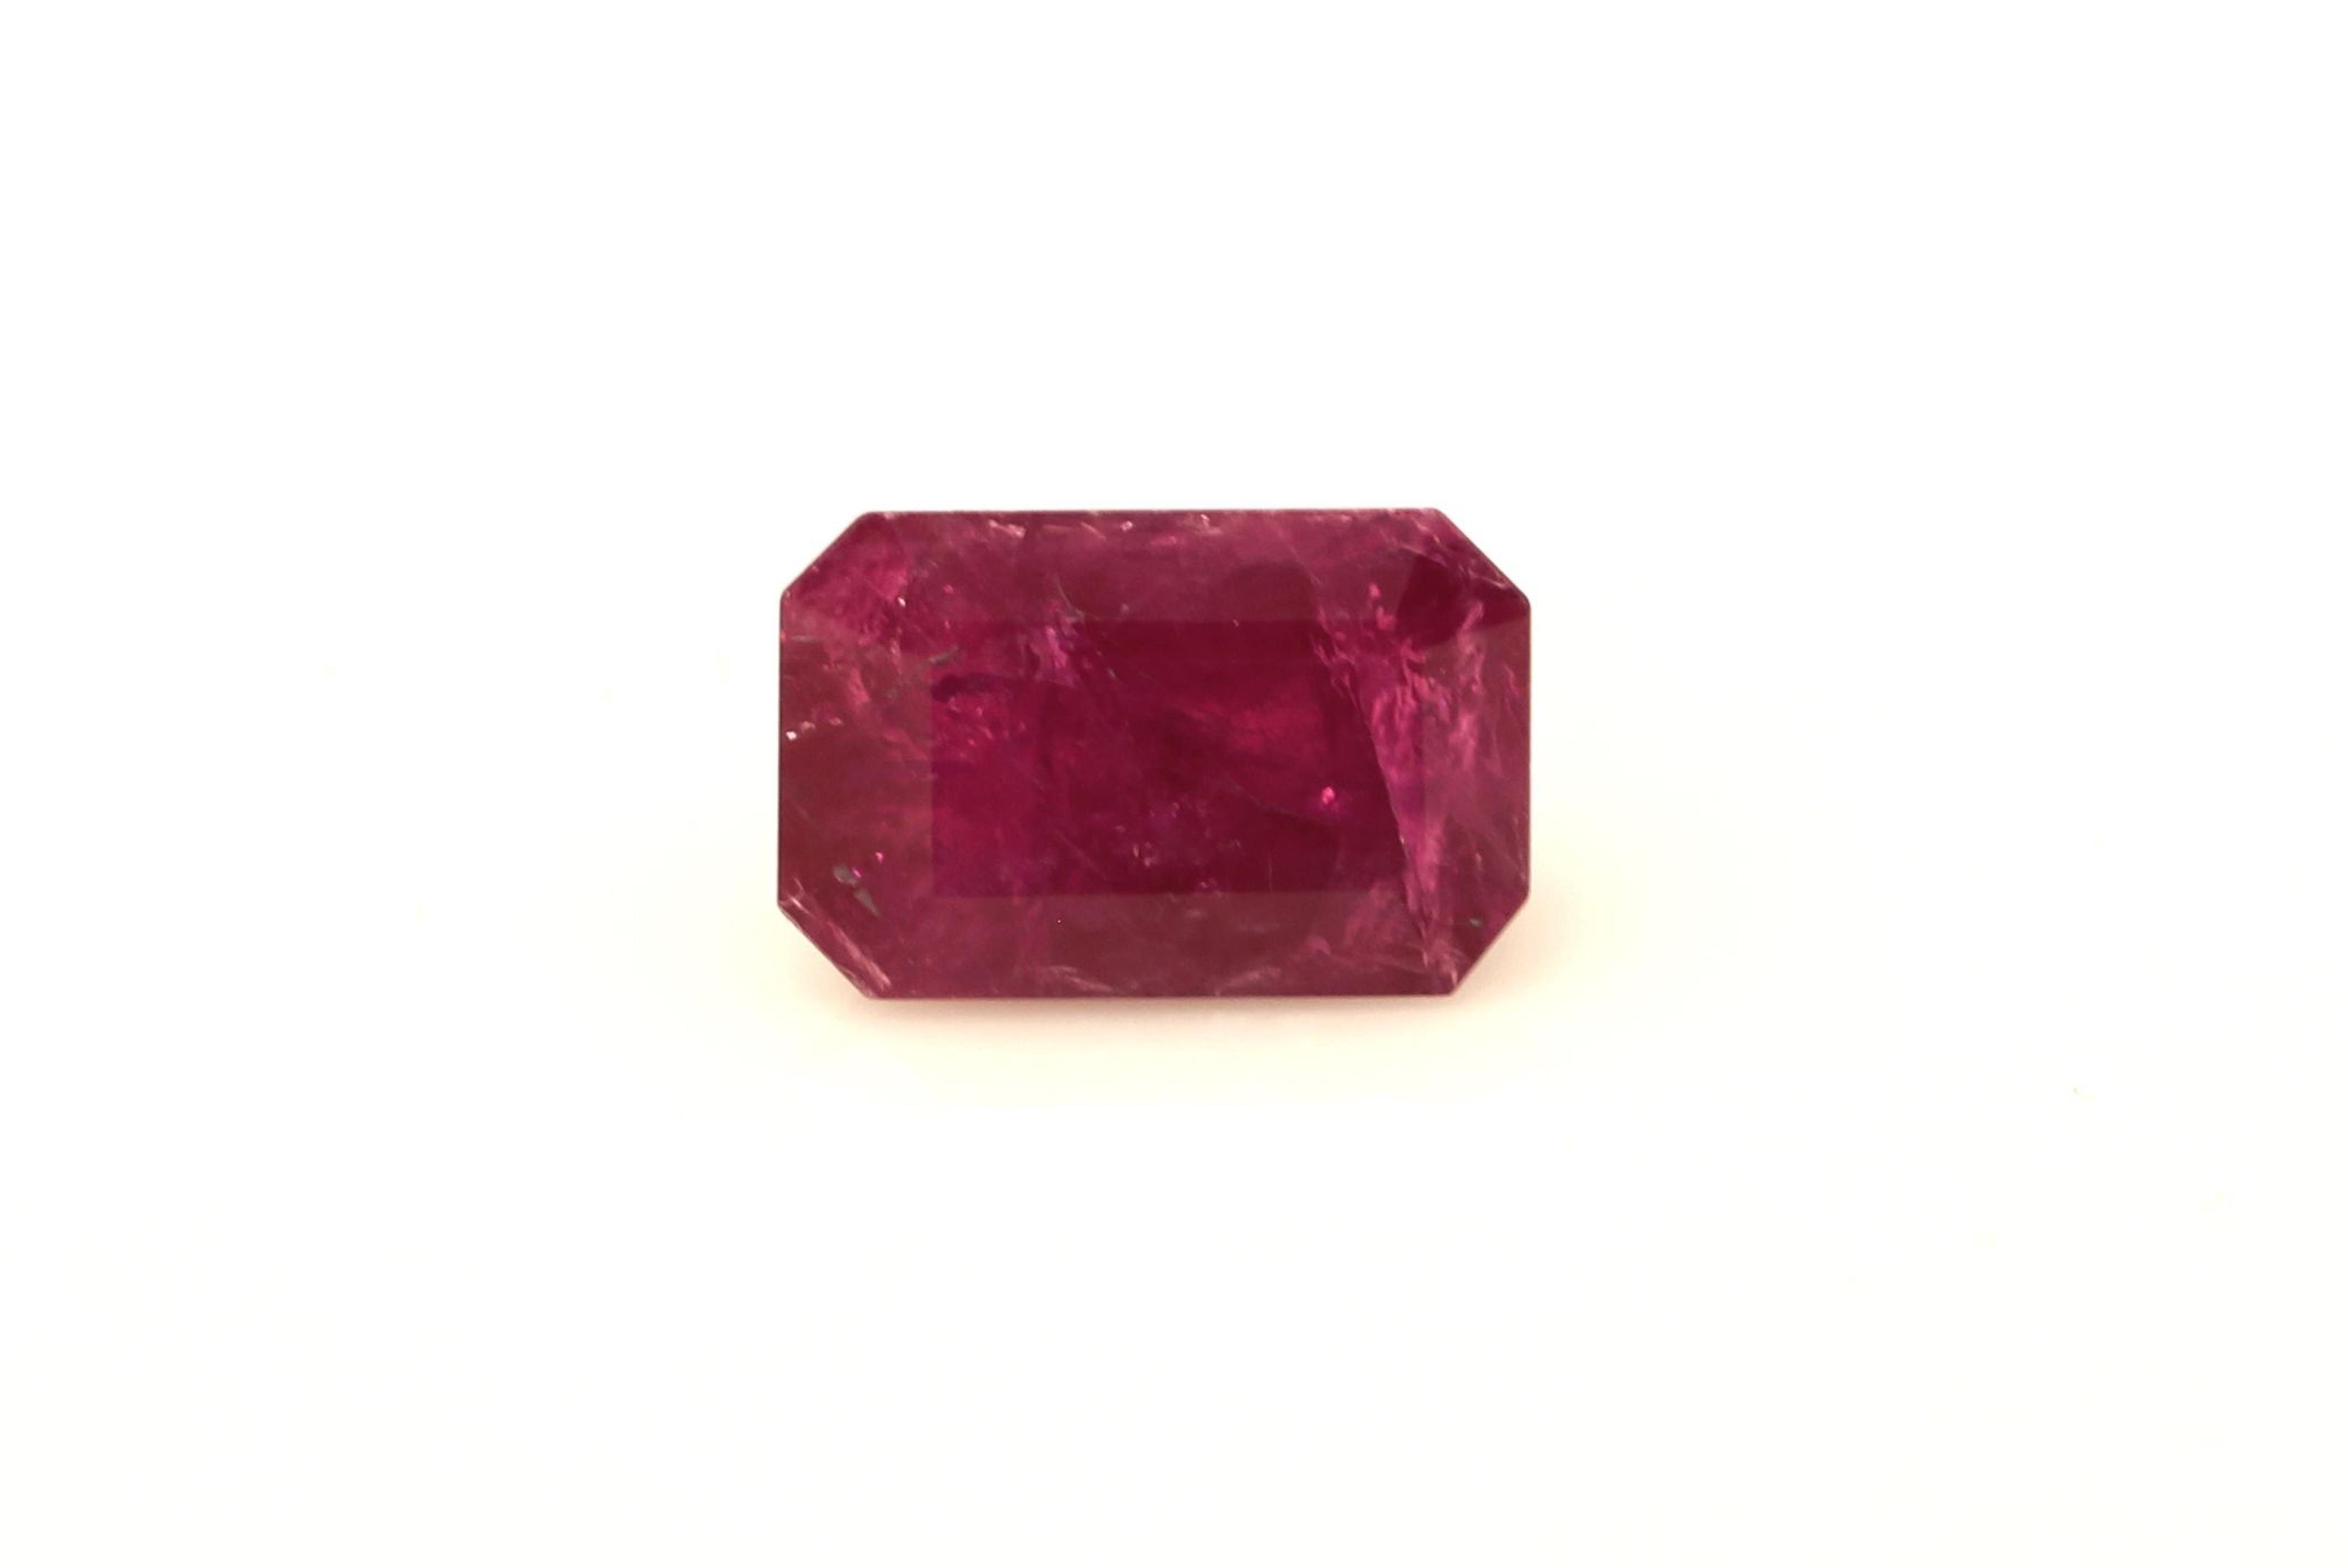 Loose Emerald Cut Ruby 9.57 Carats